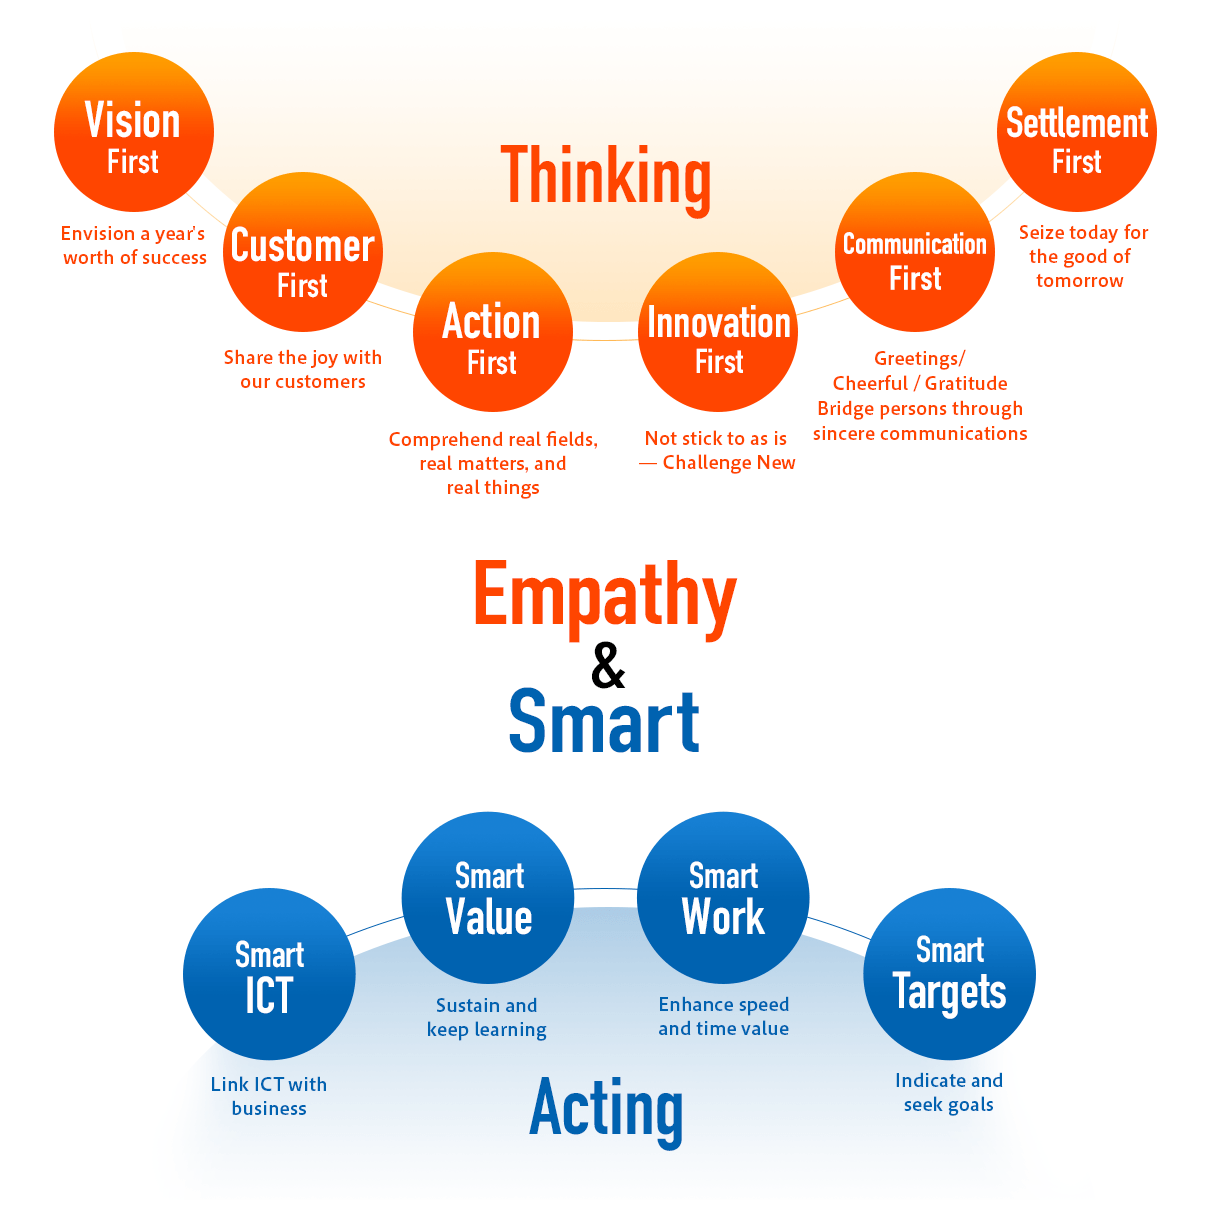 Empathy & Smart